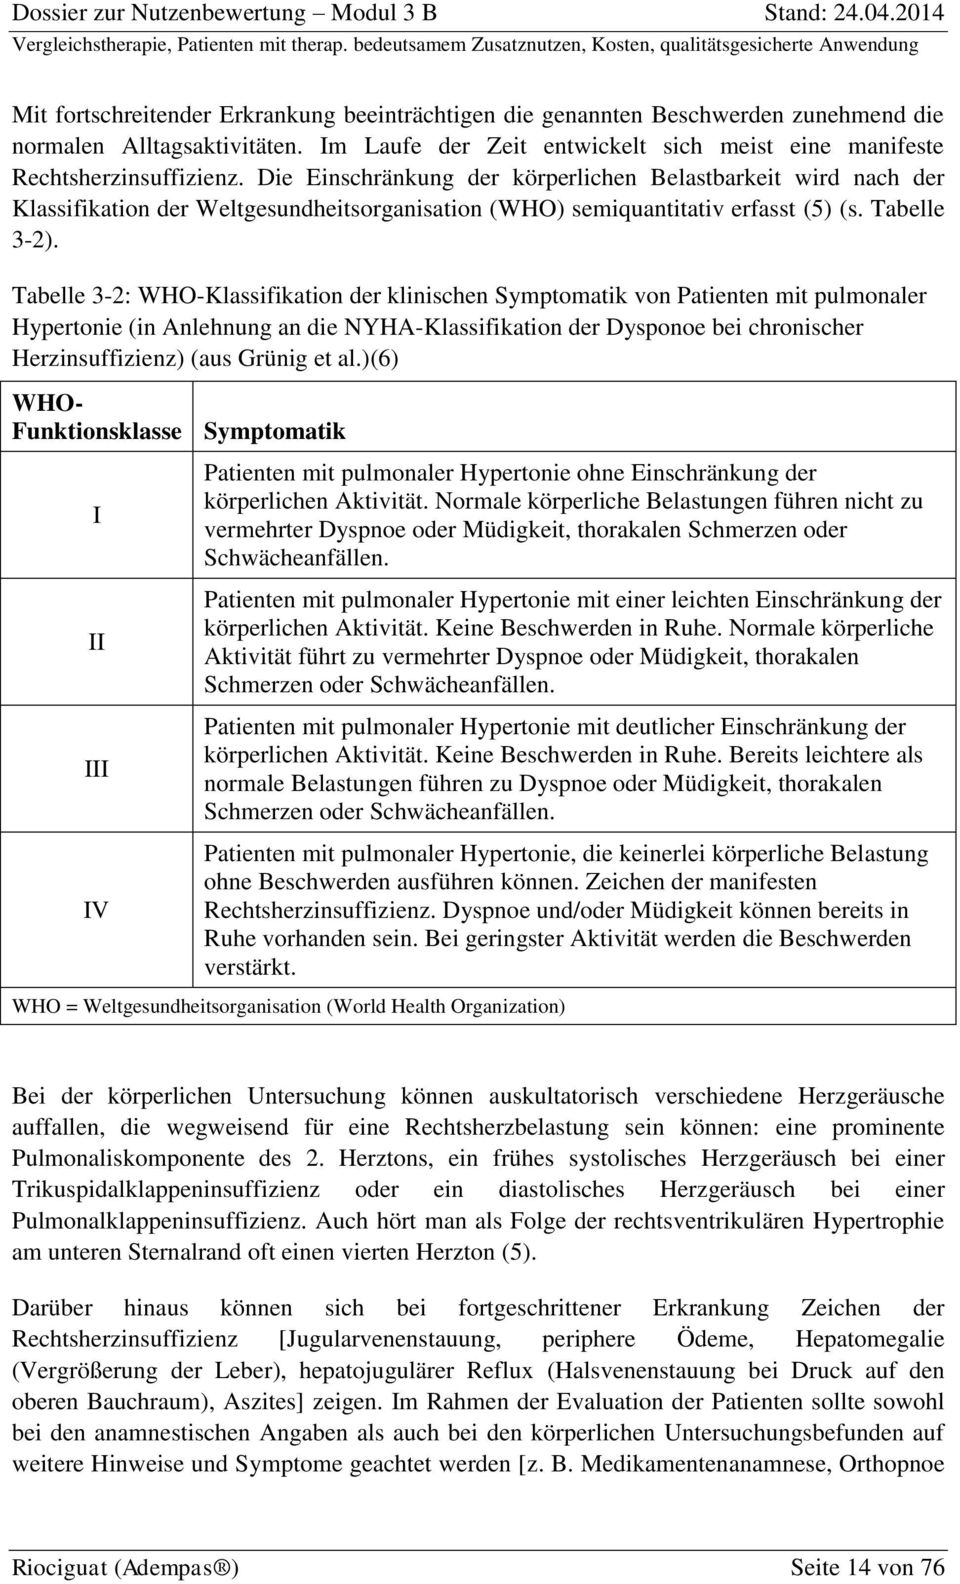 Tabelle 3-2: WHO-Klassifikation der klinischen Symptomatik von Patienten mit pulmonaler Hypertonie (in Anlehnung an die NYHA-Klassifikation der Dysponoe bei chronischer Herzinsuffizienz) (aus Grünig